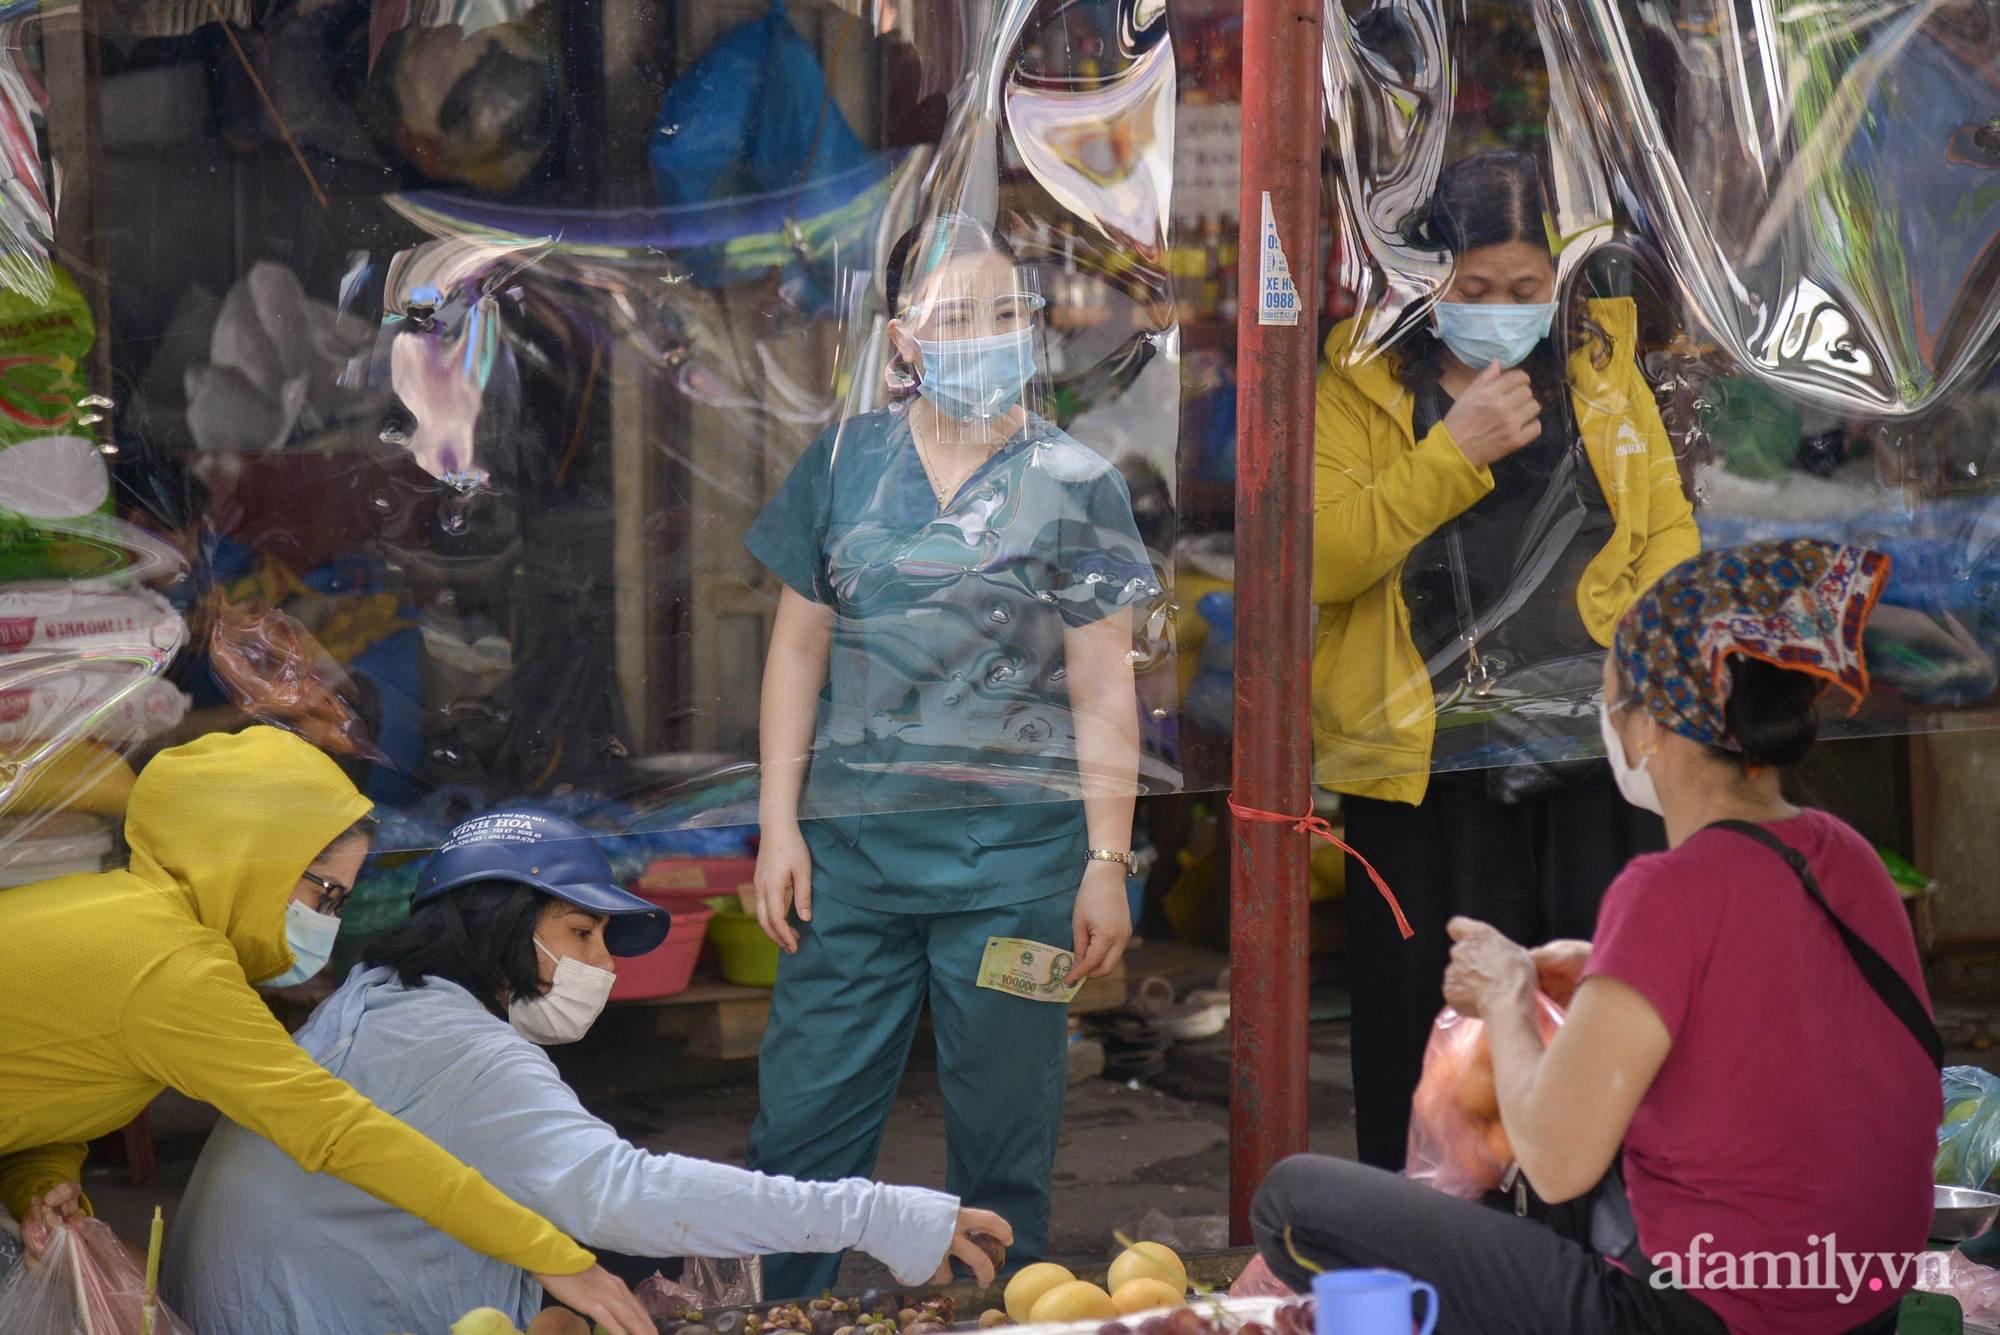 Ấn tượng với khu chợ dân sinh đầu tiên ở Hà Nội quây tấm nilon phòng dịch COVID-19, tiểu thương chia ca đứng bán theo ngày chẵn, lẻ - Ảnh 13.